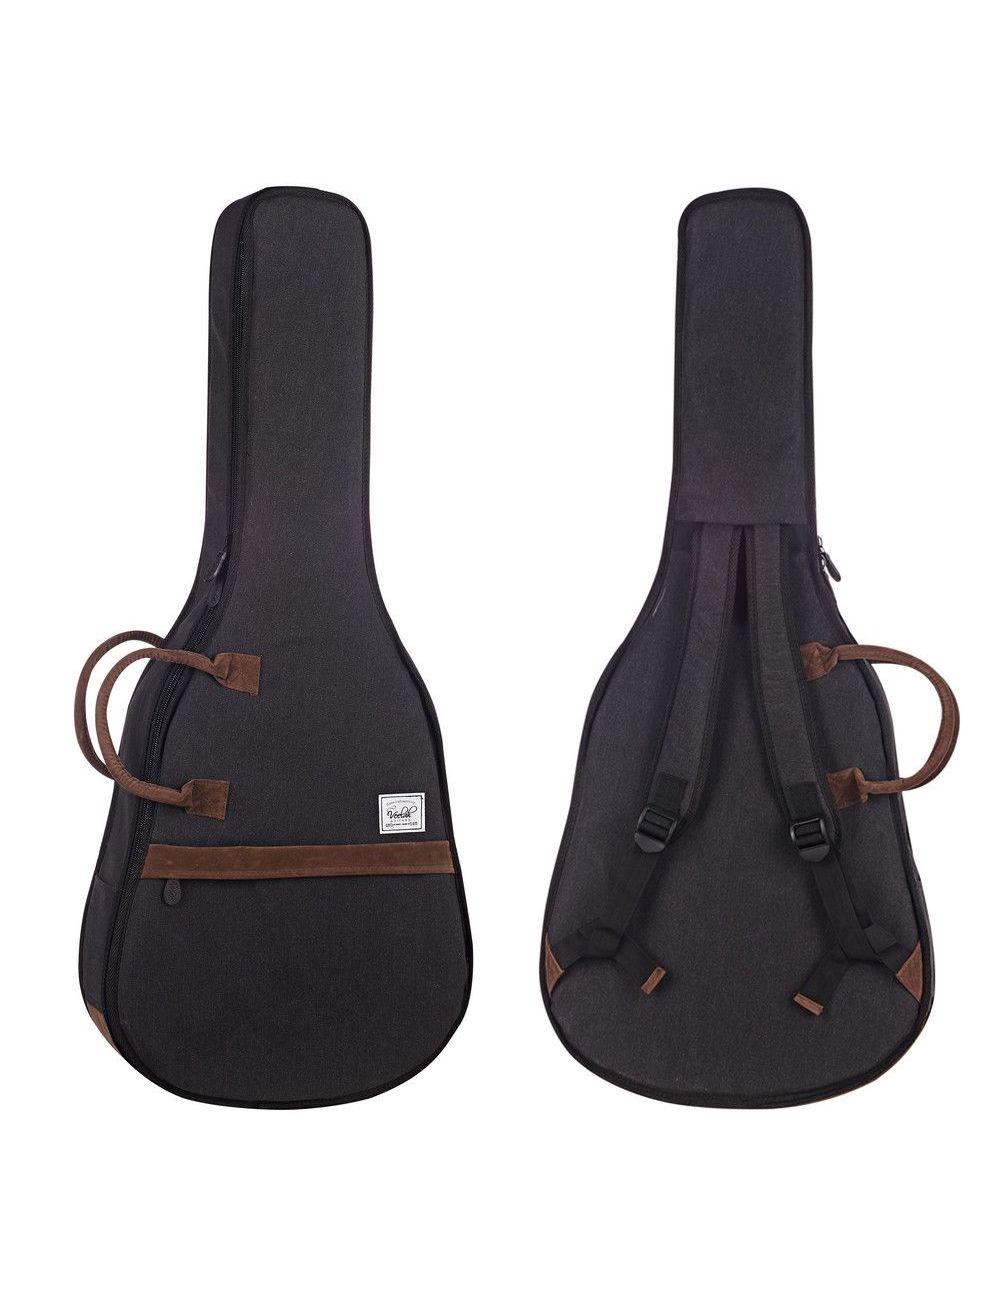 Veelah Black CGB15-BK Classical guitar gig bag 1502454 Classical and flamenco